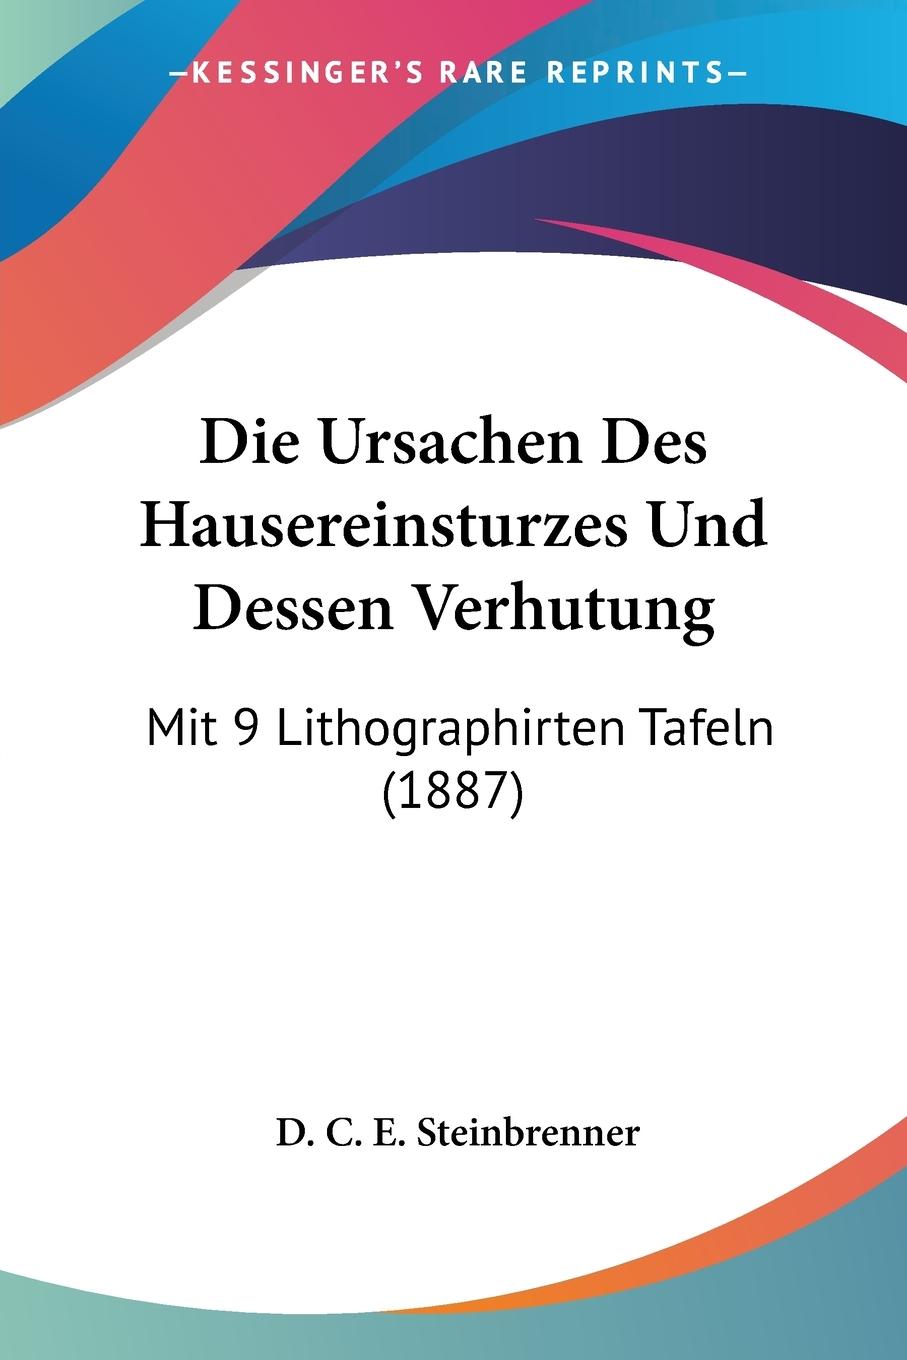 Die Ursachen Des Hausereinsturzes Und Dessen Verhutung - Steinbrenner, D. C. E.